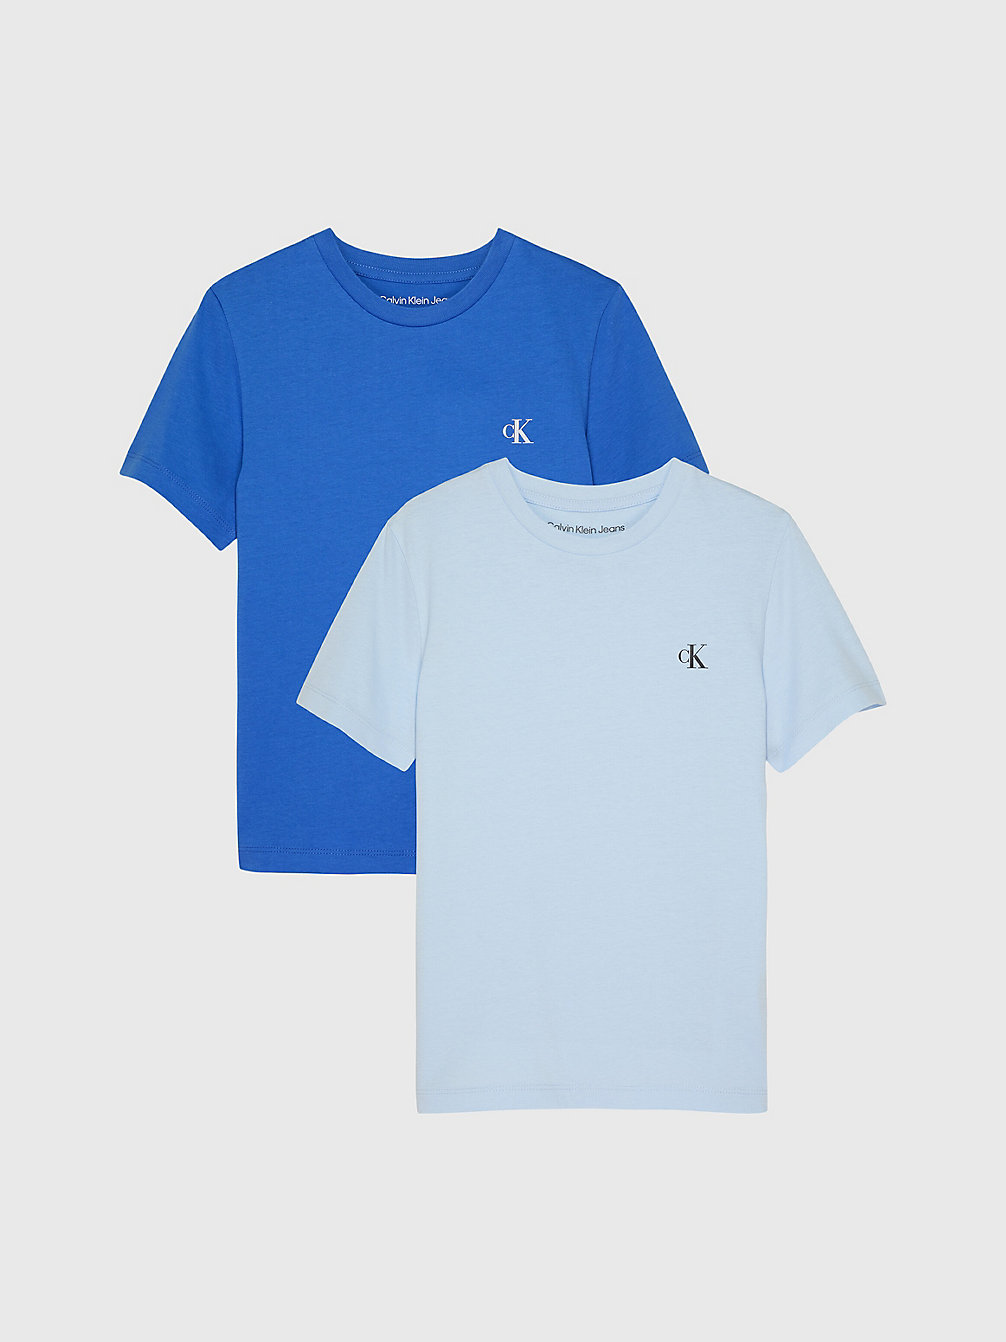 CORRIB BLUE/ KEEPSAKE BLUE > Zestaw 2 T-Shirtów Z Bawełny Organicznej > undefined boys - Calvin Klein